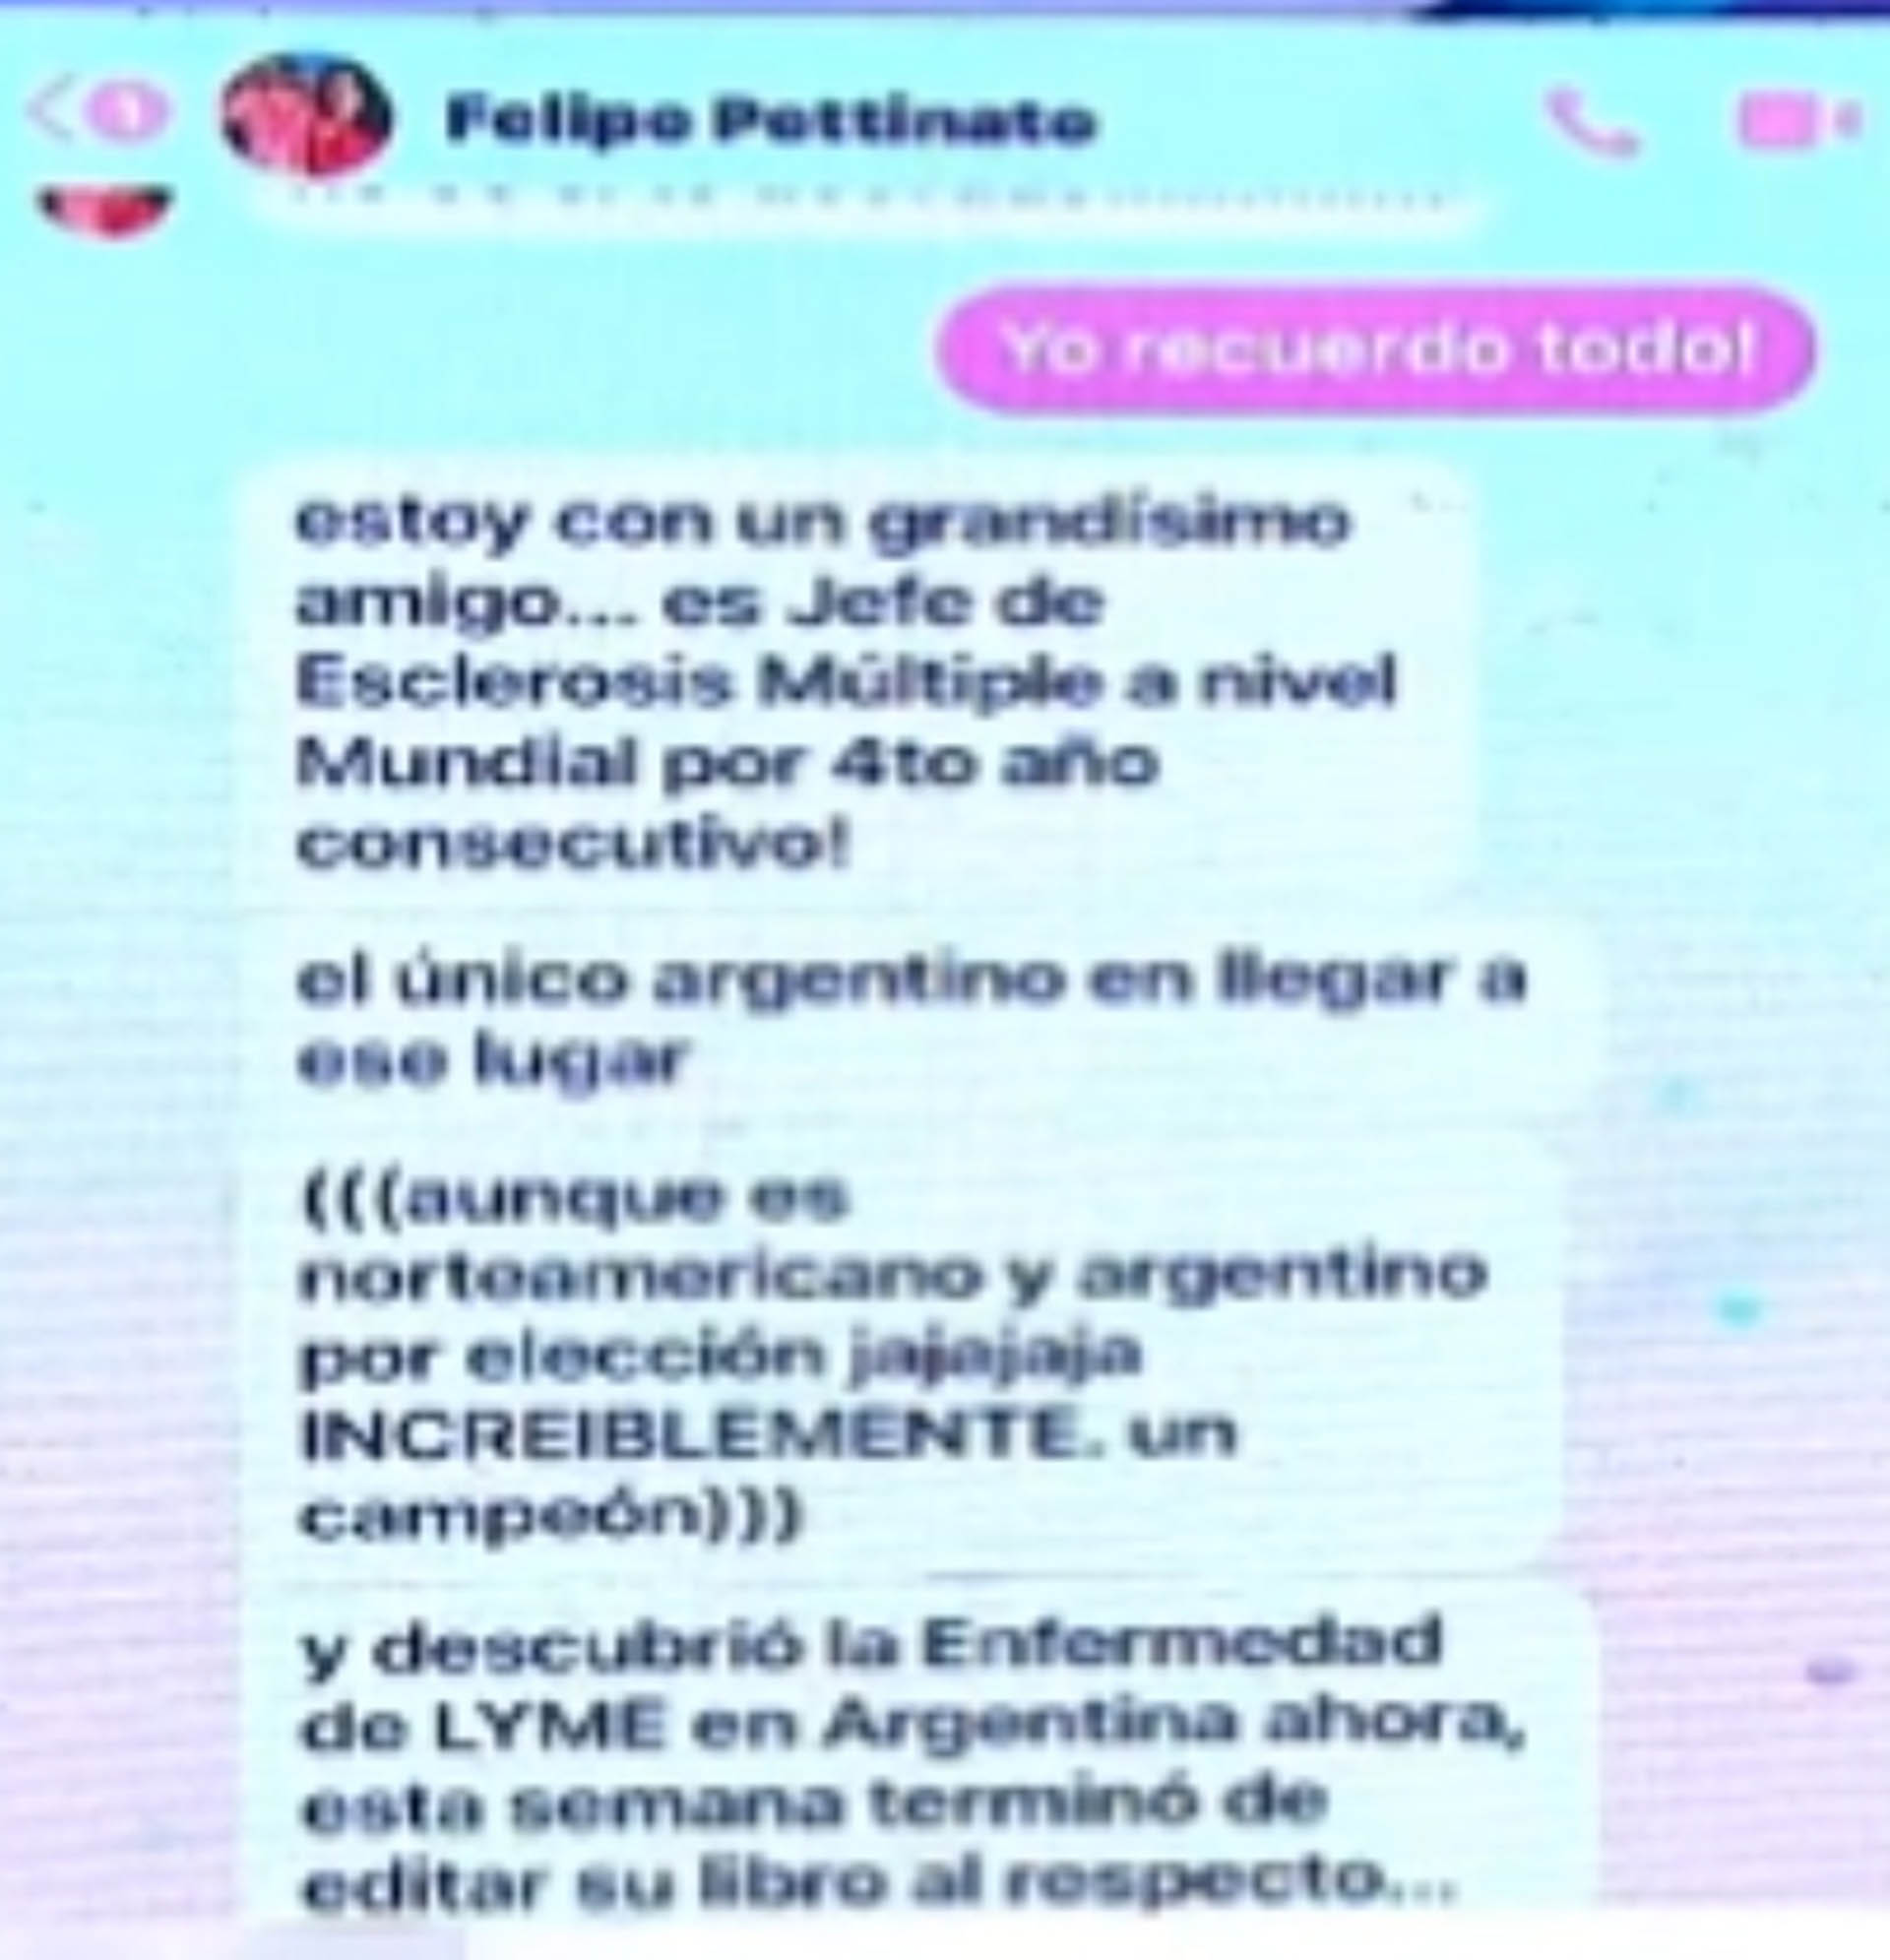 Los presuntos chats de Felipe Pettinato sobre su relación con el médico (Foto: Captura de video)